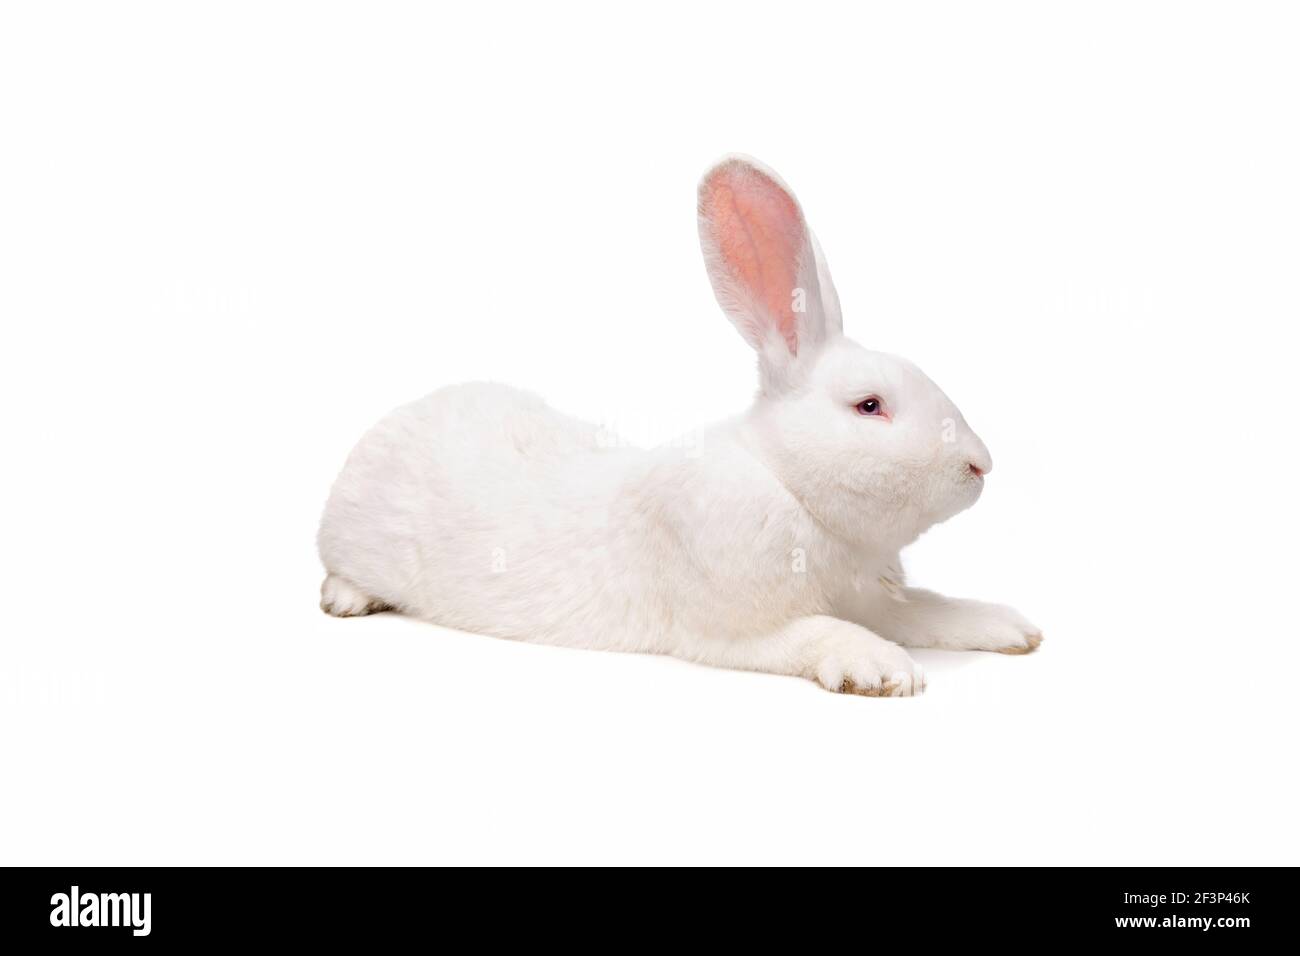 vue latérale d'un gros lapin blanc devant un arrière-plan blanc Banque D'Images